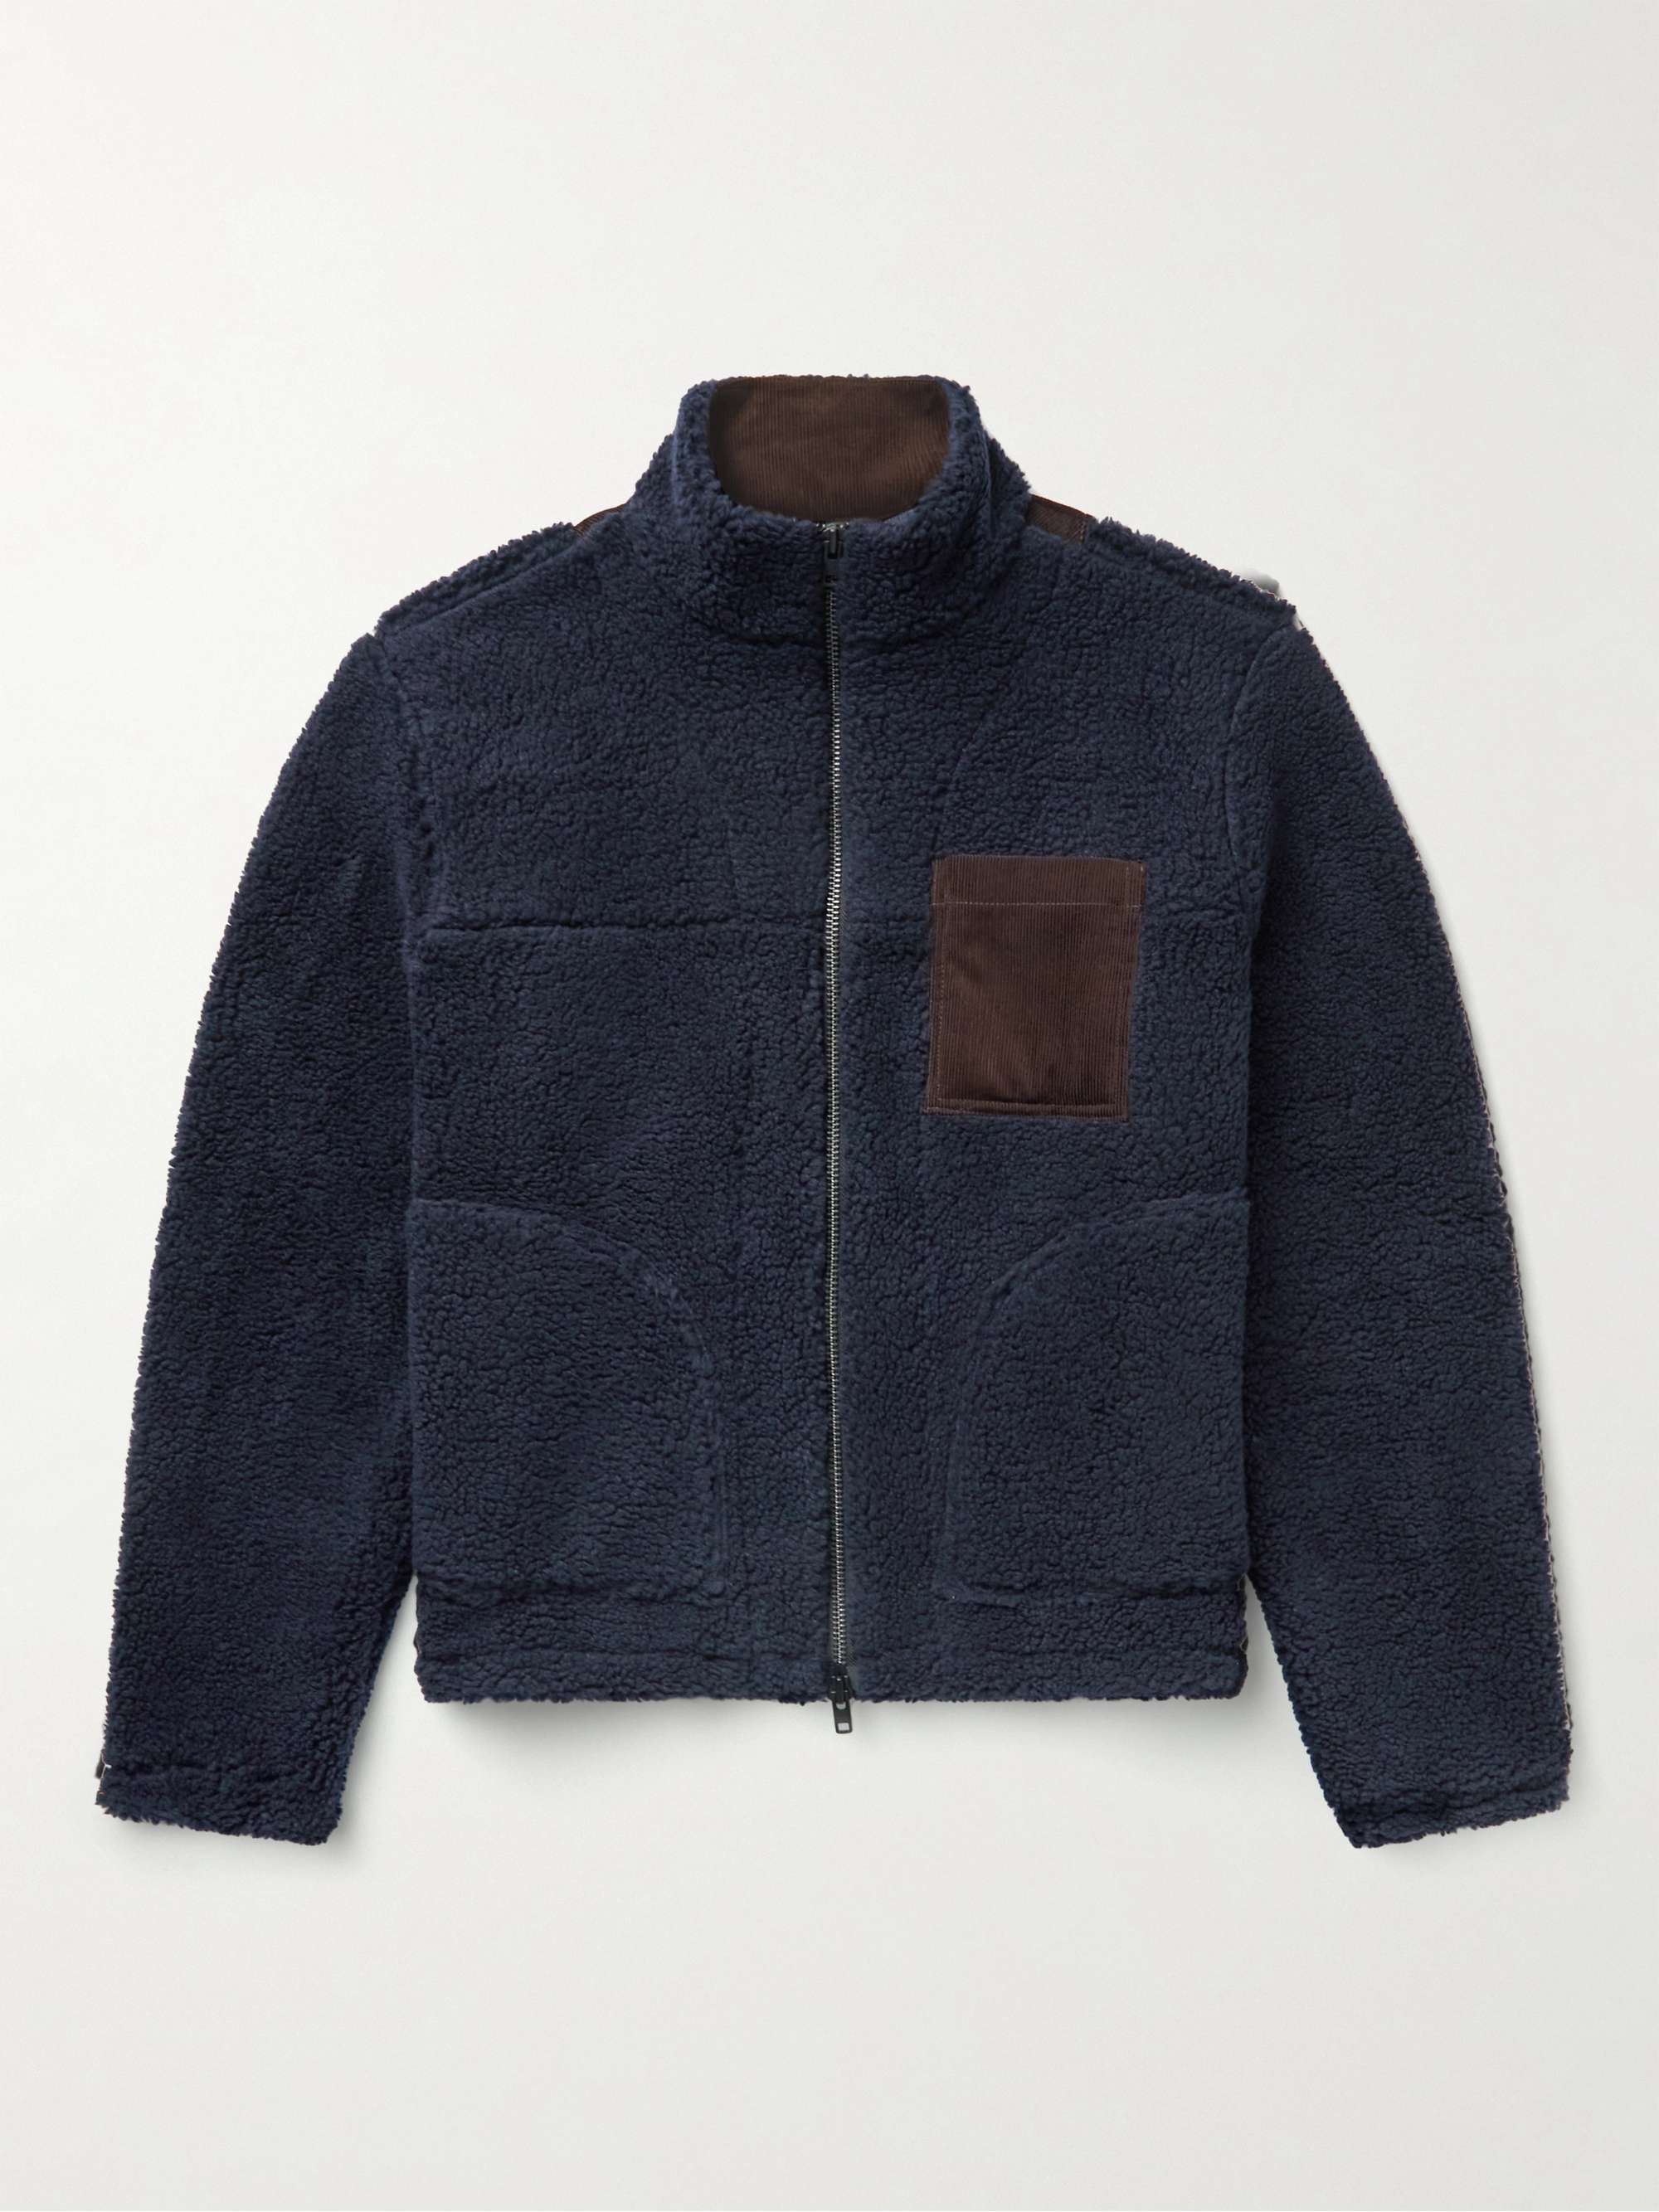 OLIVER SPENCER Bembridge Corduroy-Trimmed Fleece Jacket for Men | MR PORTER